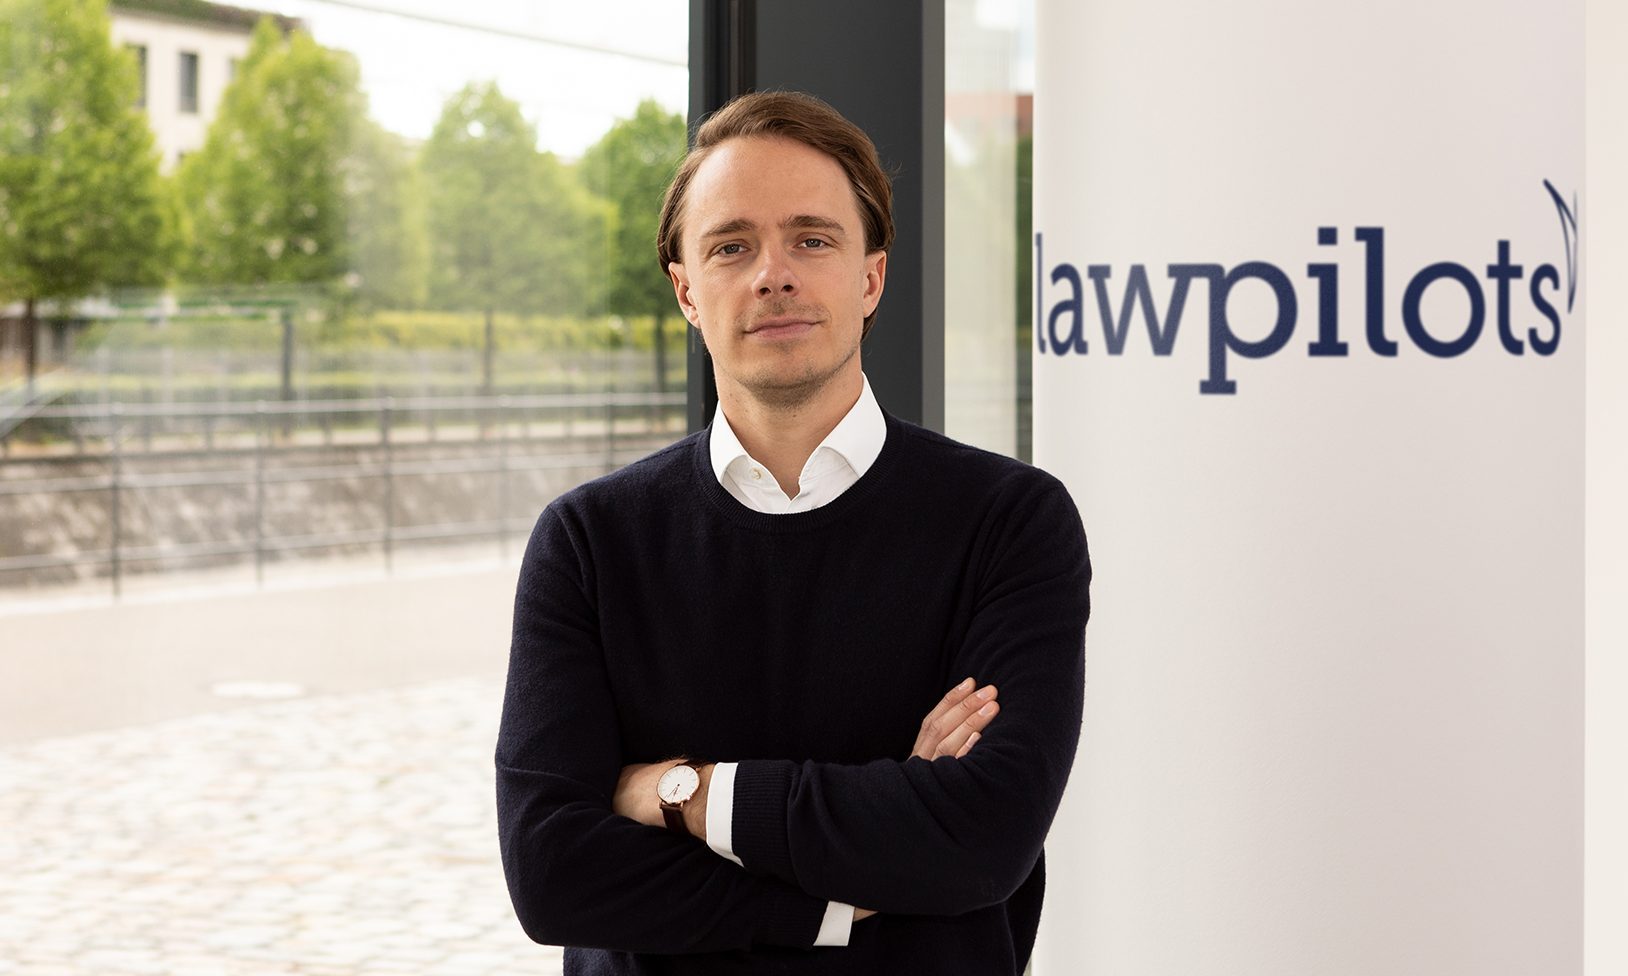 Mit digitalen Lösungen Rechtsabteilungen und Kanzleien entlasten – Philipp von Bülow von lawpilots im Interview